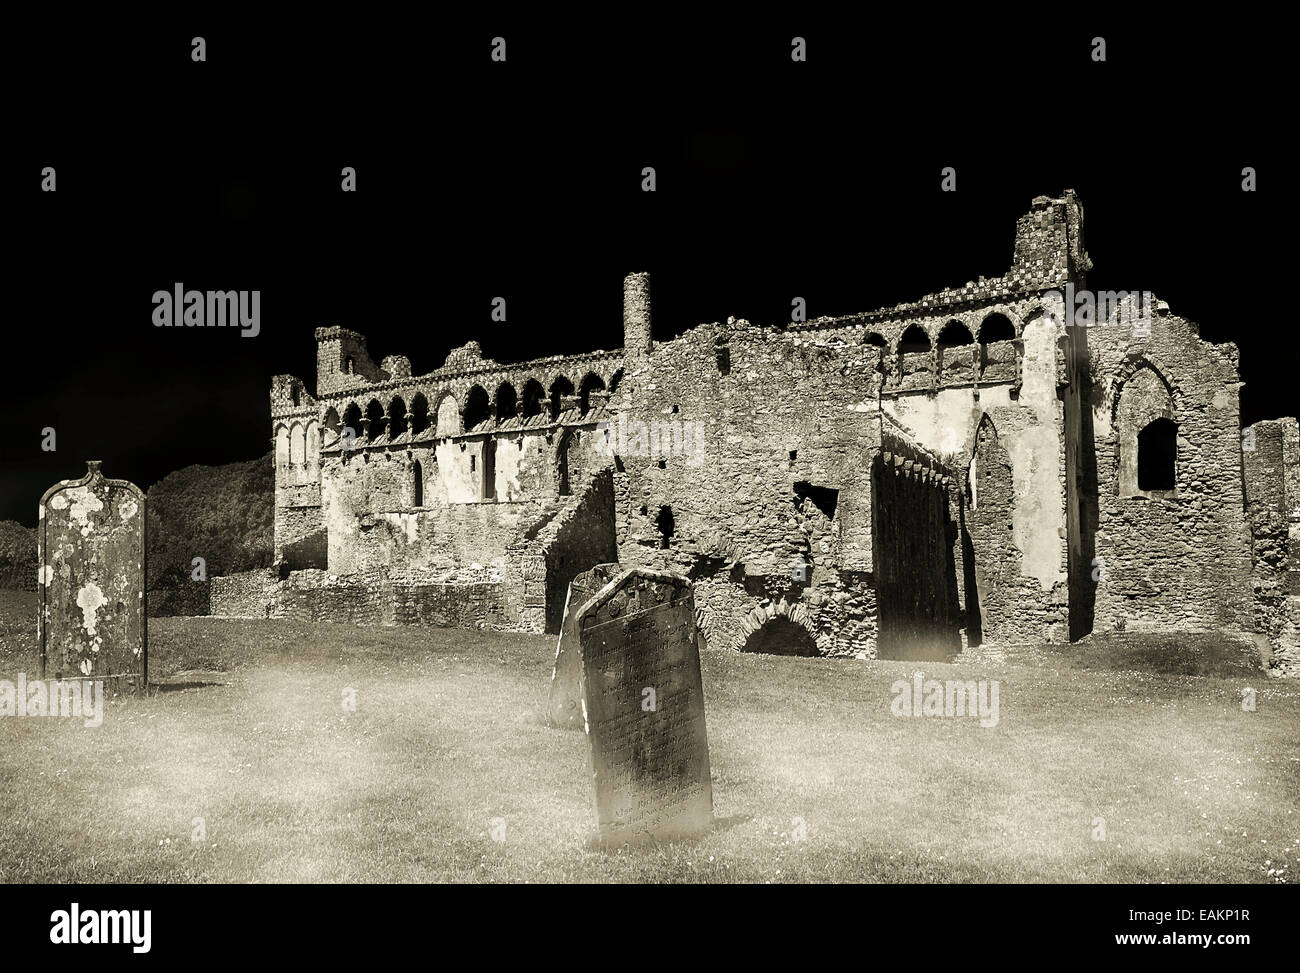 Une abbaye en ruine à Pembroke, au Pays de Galles, Royaume-Uni Banque D'Images